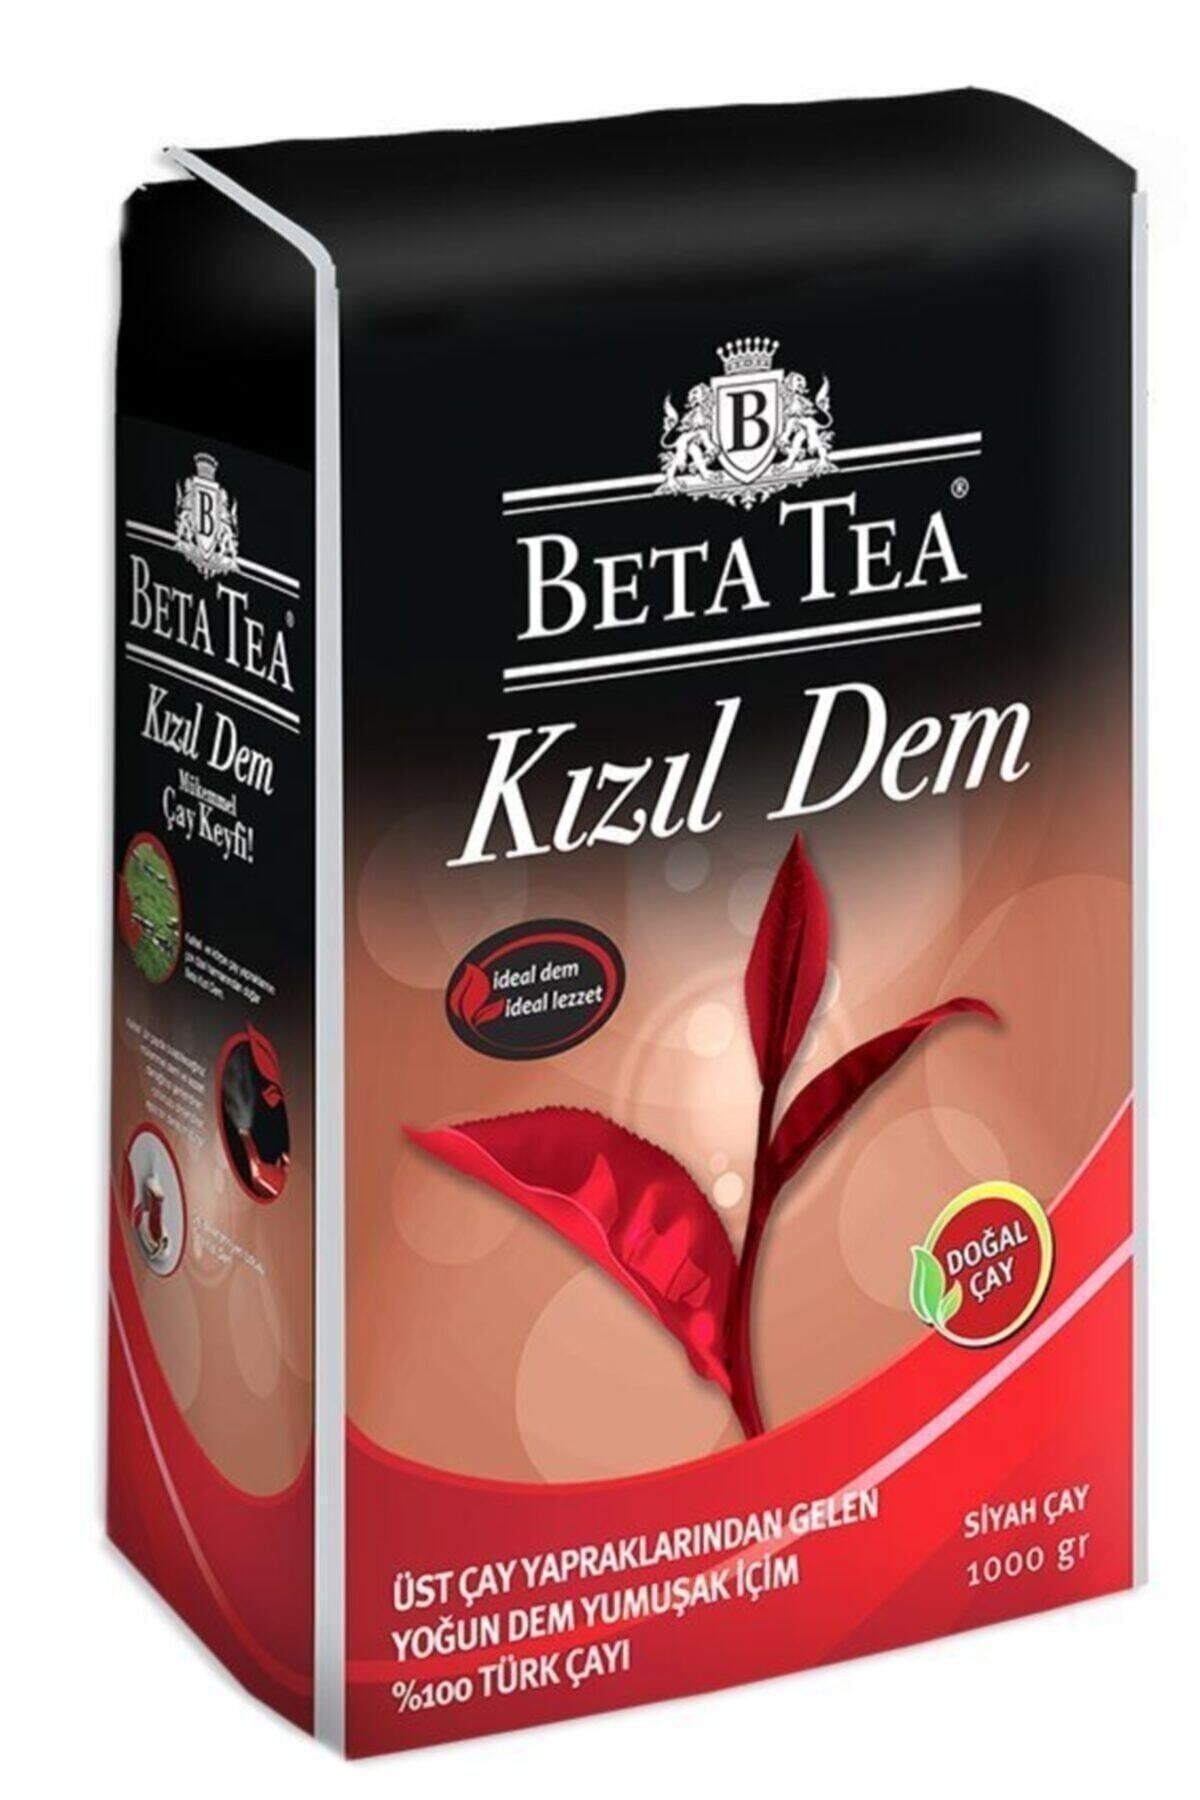 Beta Tea Kızıl Dem 1000g